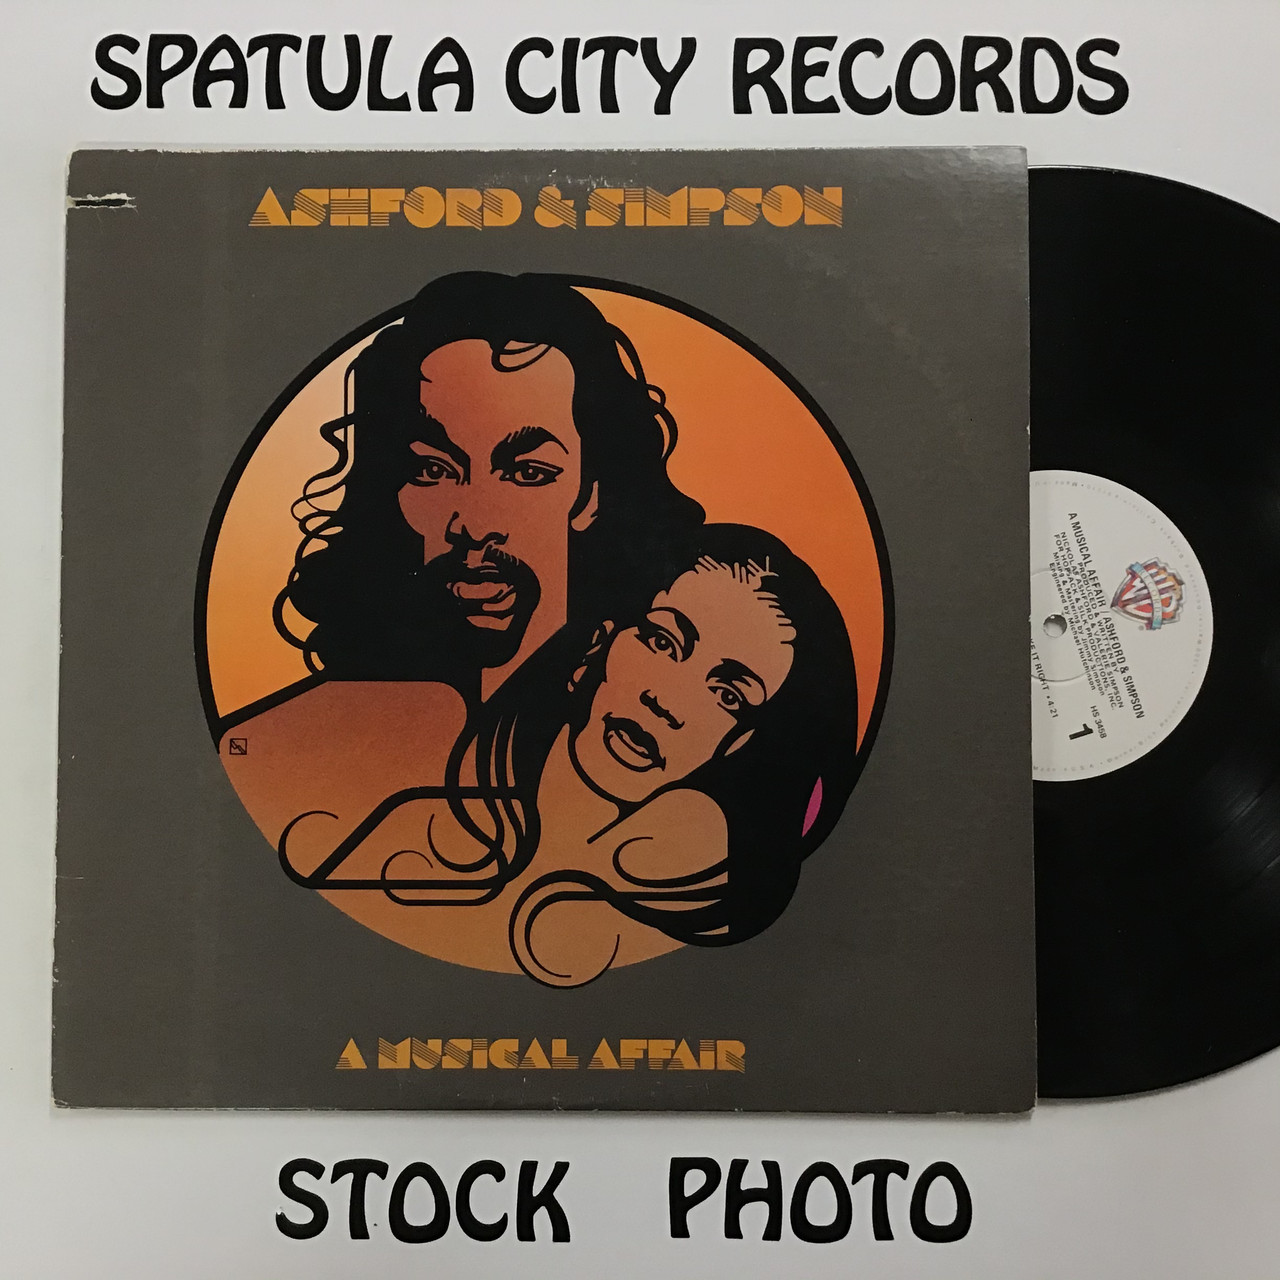 Ashford and Simpson - A Musical Affair - vinyl record LP